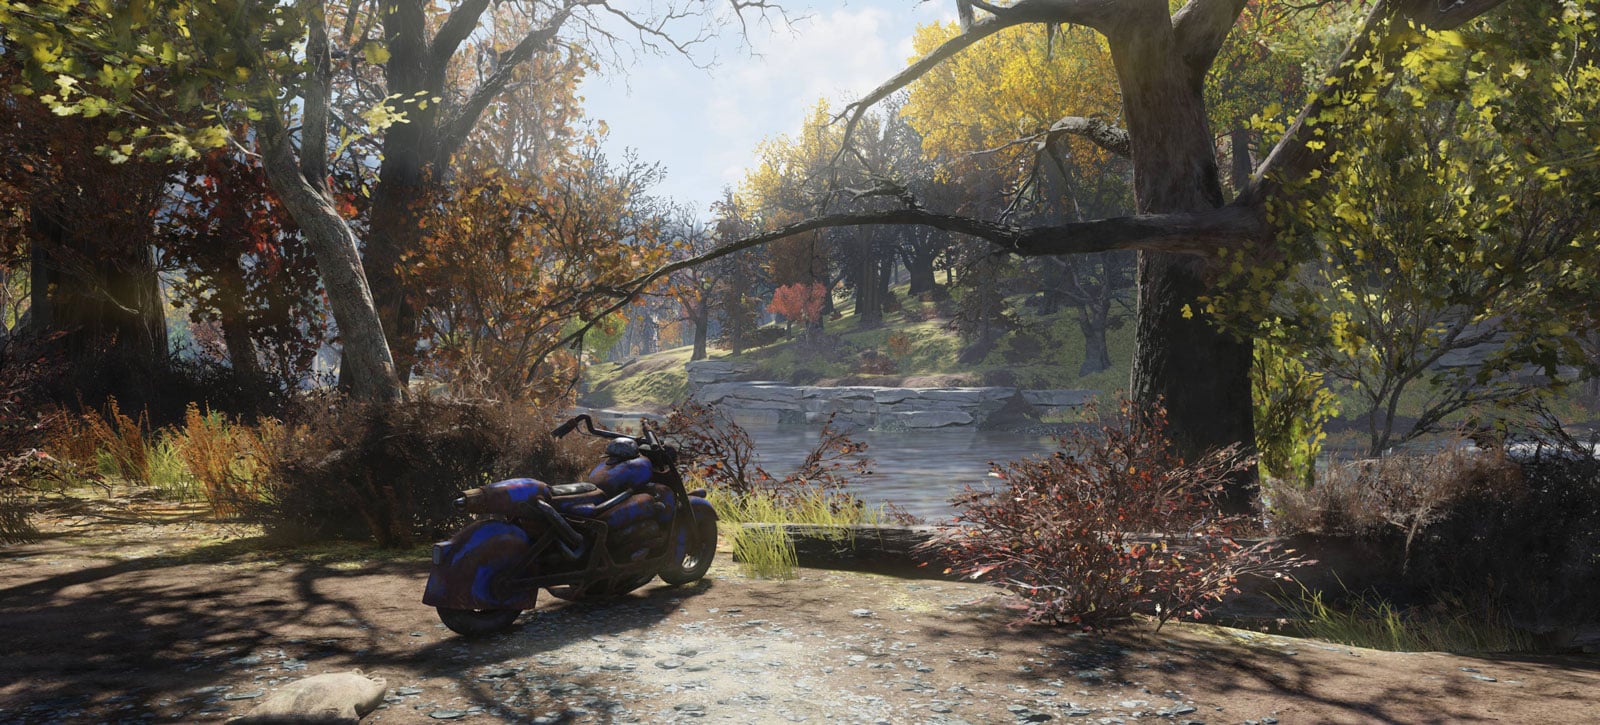 Fallout 76 roadmap